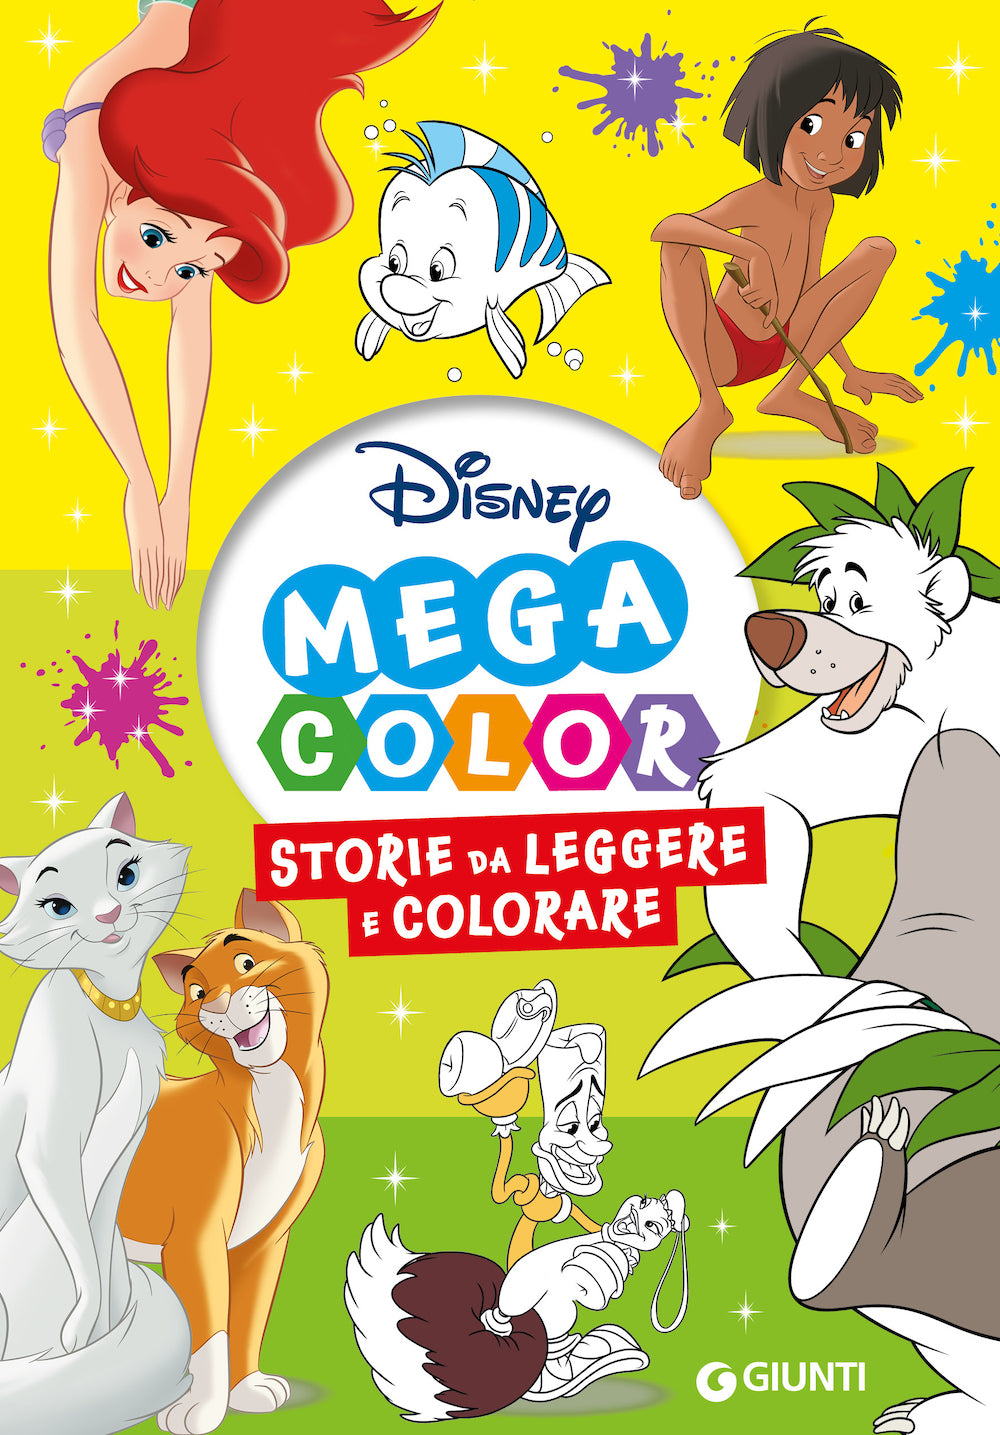 Disney Mega Color::Storie da leggere e colorare